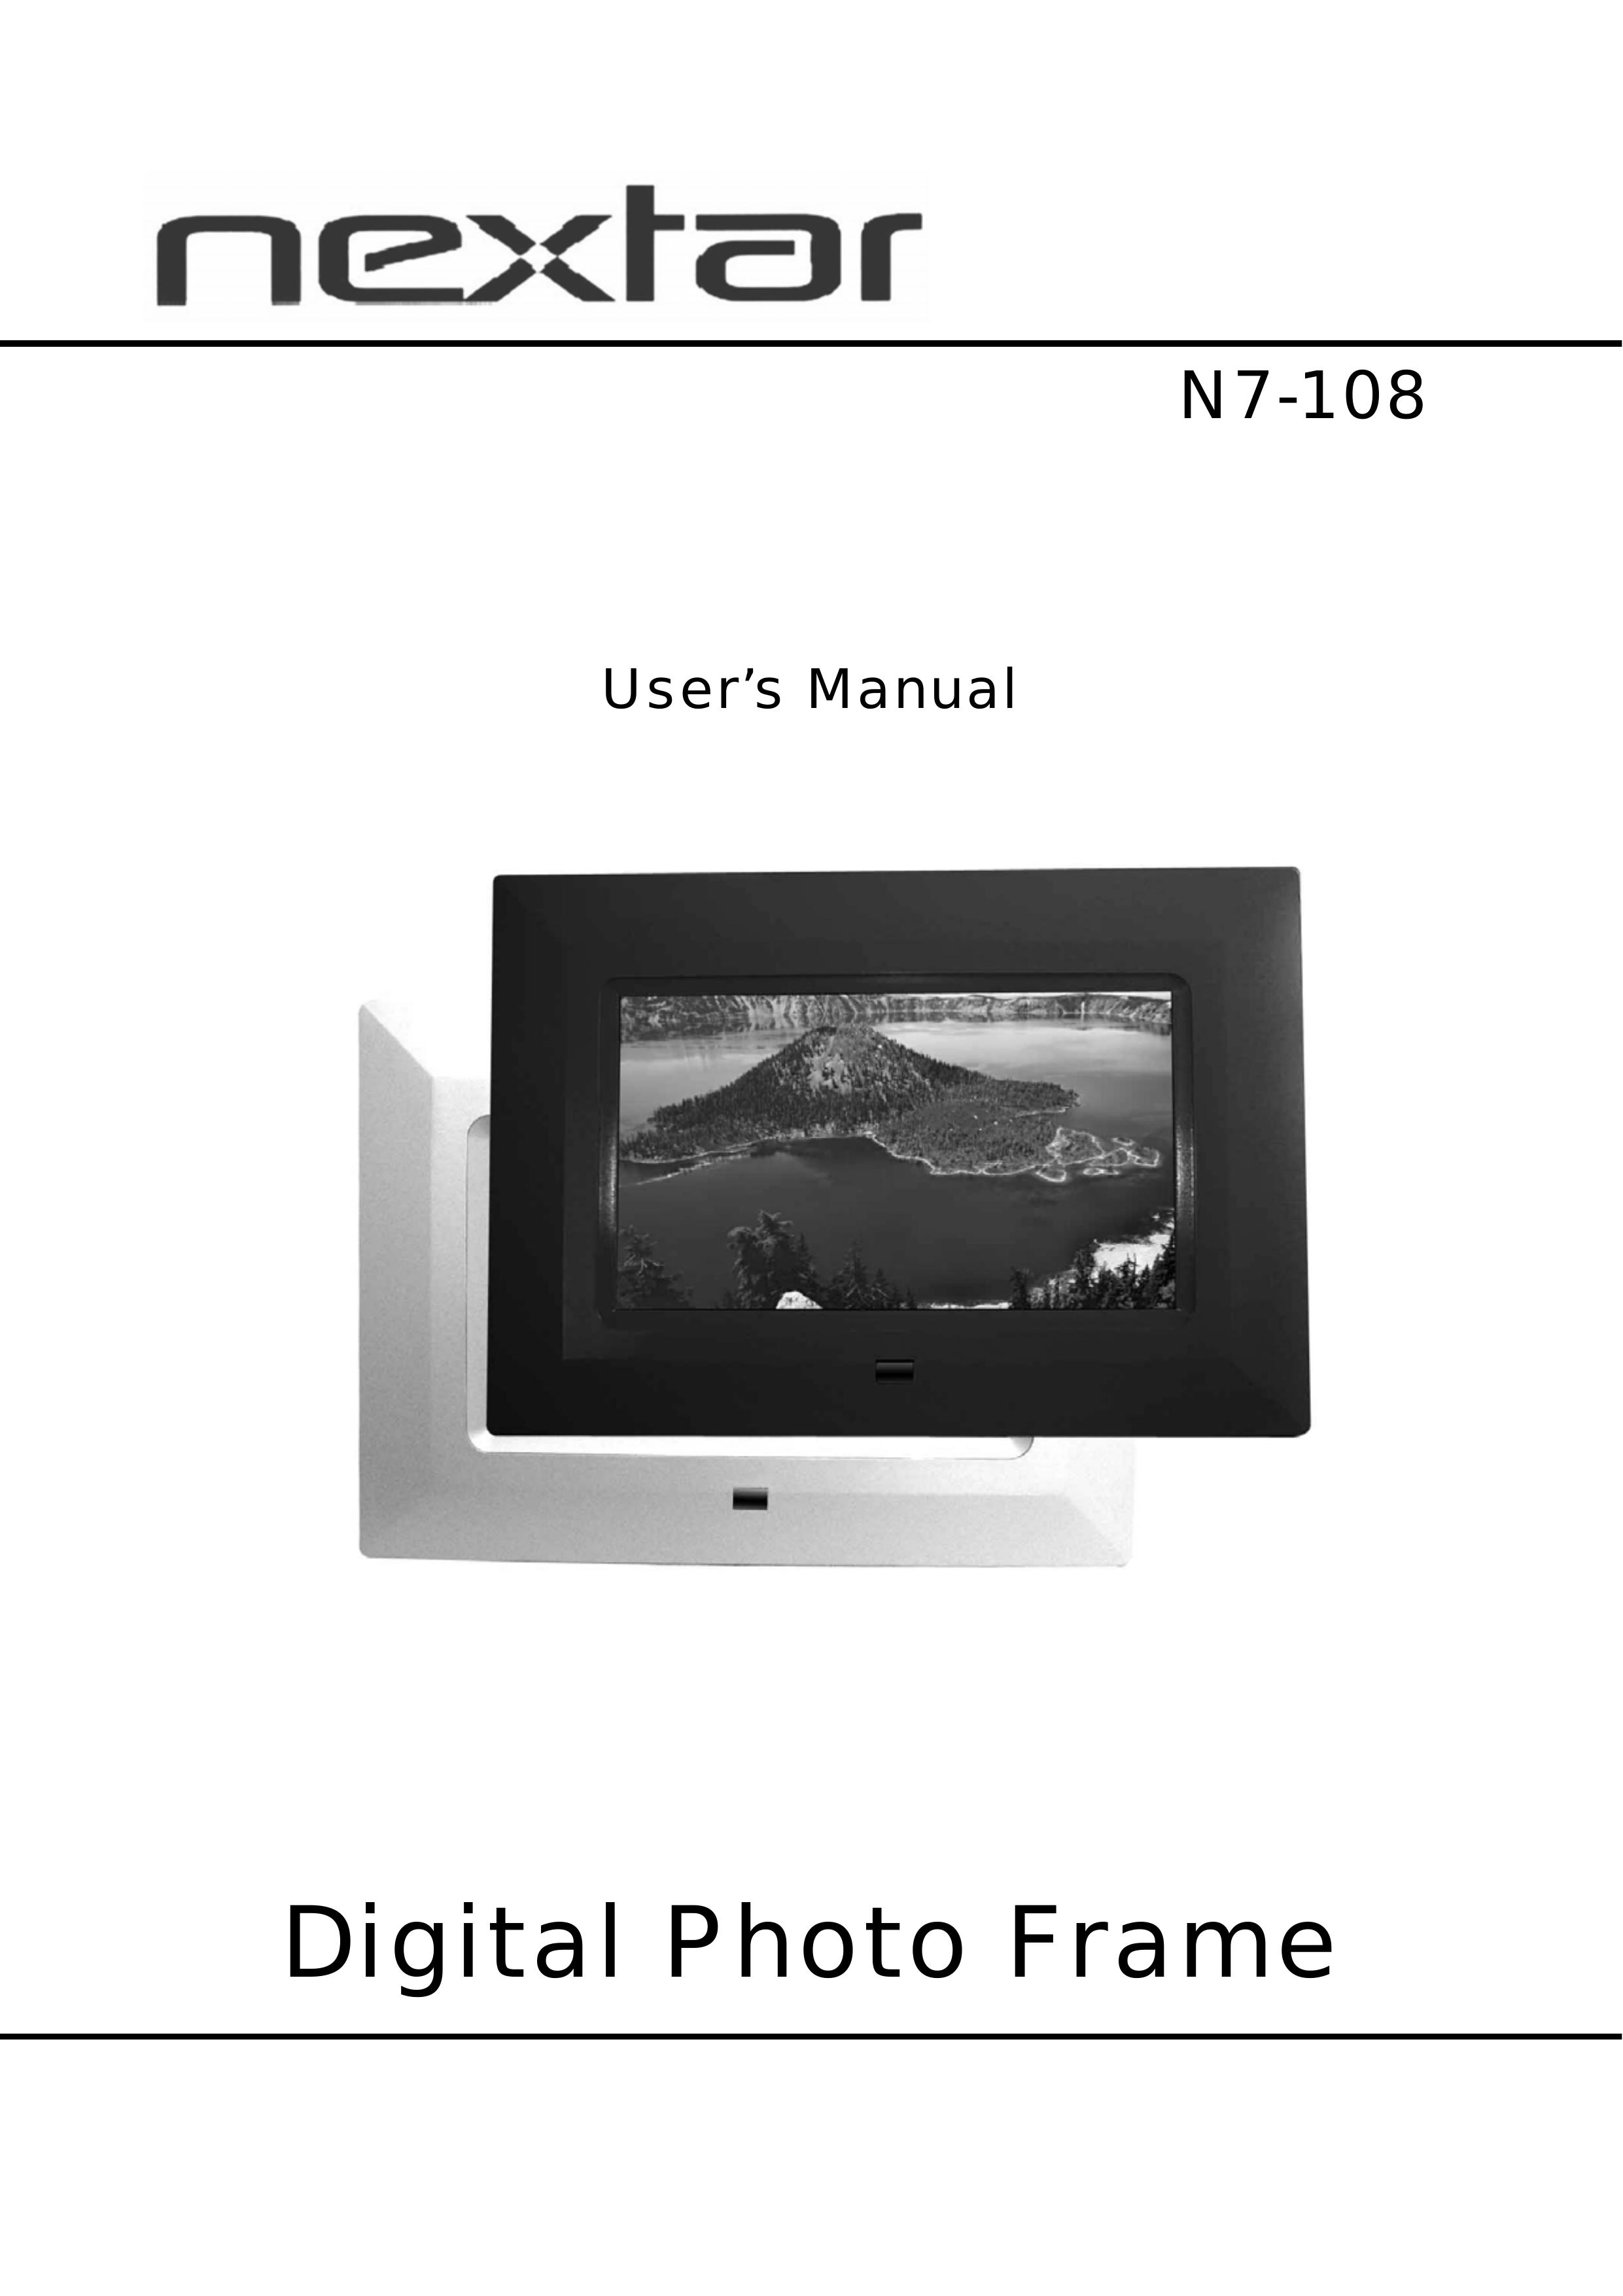 Nextar N7-108 Digital Photo Frame User Manual